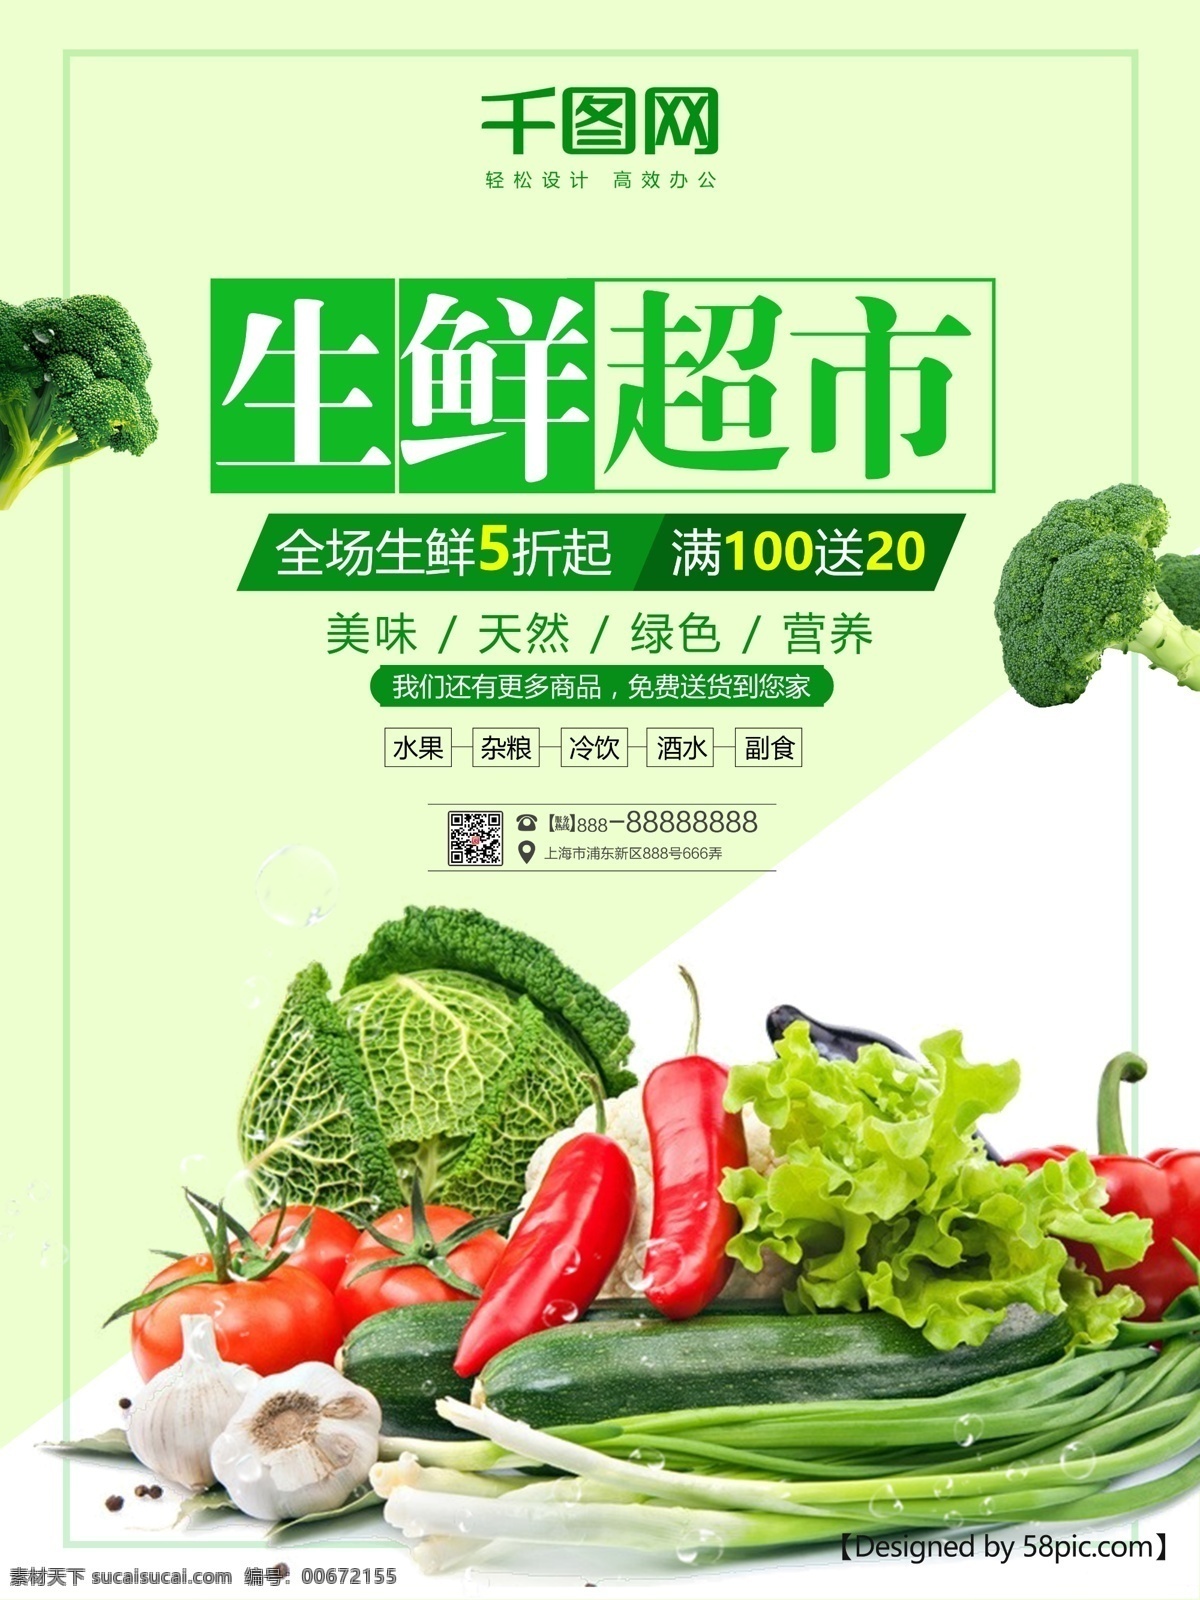 绿色 生鲜 超市 宣传海报 超市大促 超市海报 简约 绿色生鲜 绿色蔬菜 全场5折 生鲜超市 生鲜蔬菜